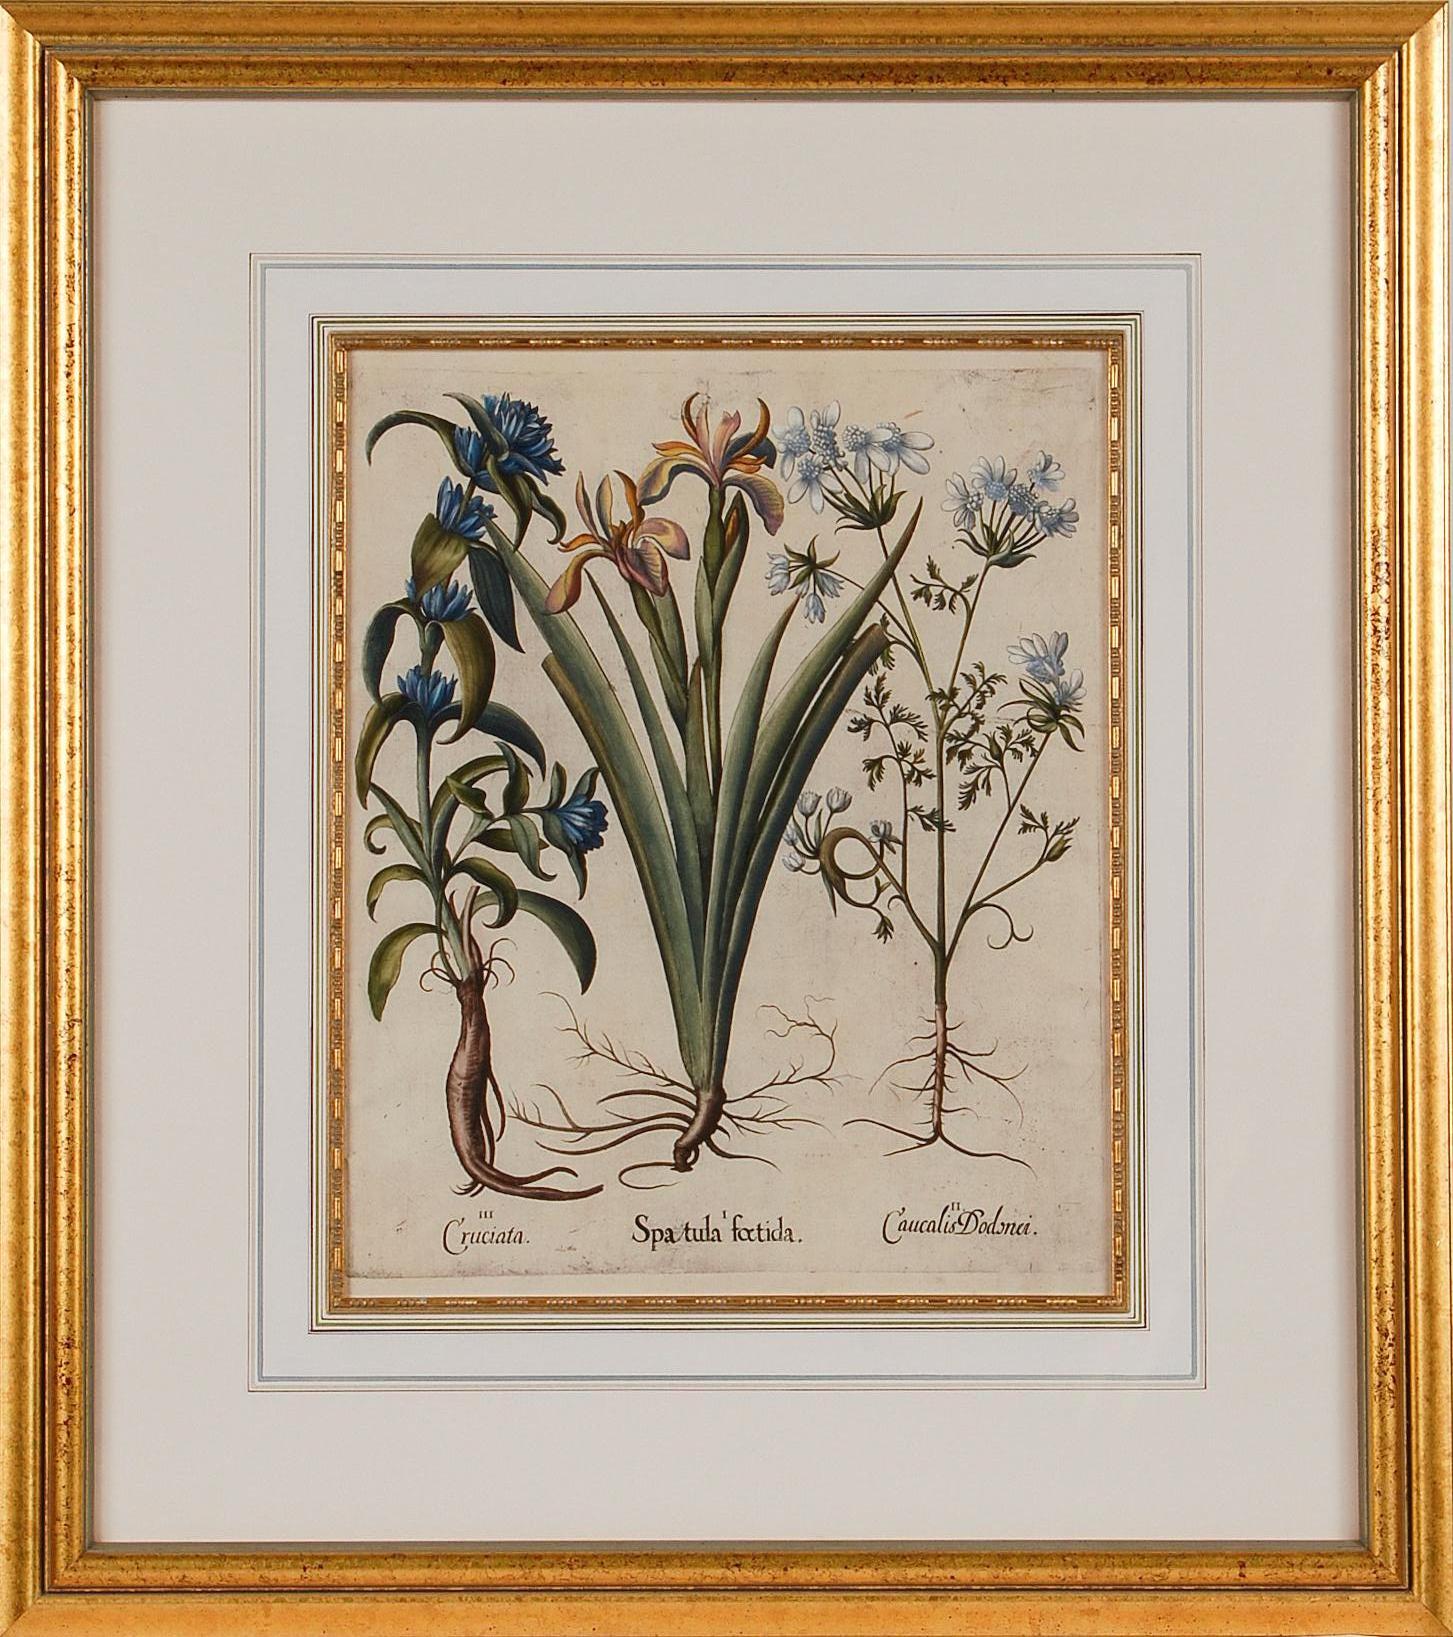 Basilius Besler Figurative Print – Iris und andere botanische Blumen: Gerahmte, handkolorierte Gravur von Besler aus dem 17. Jahrhundert